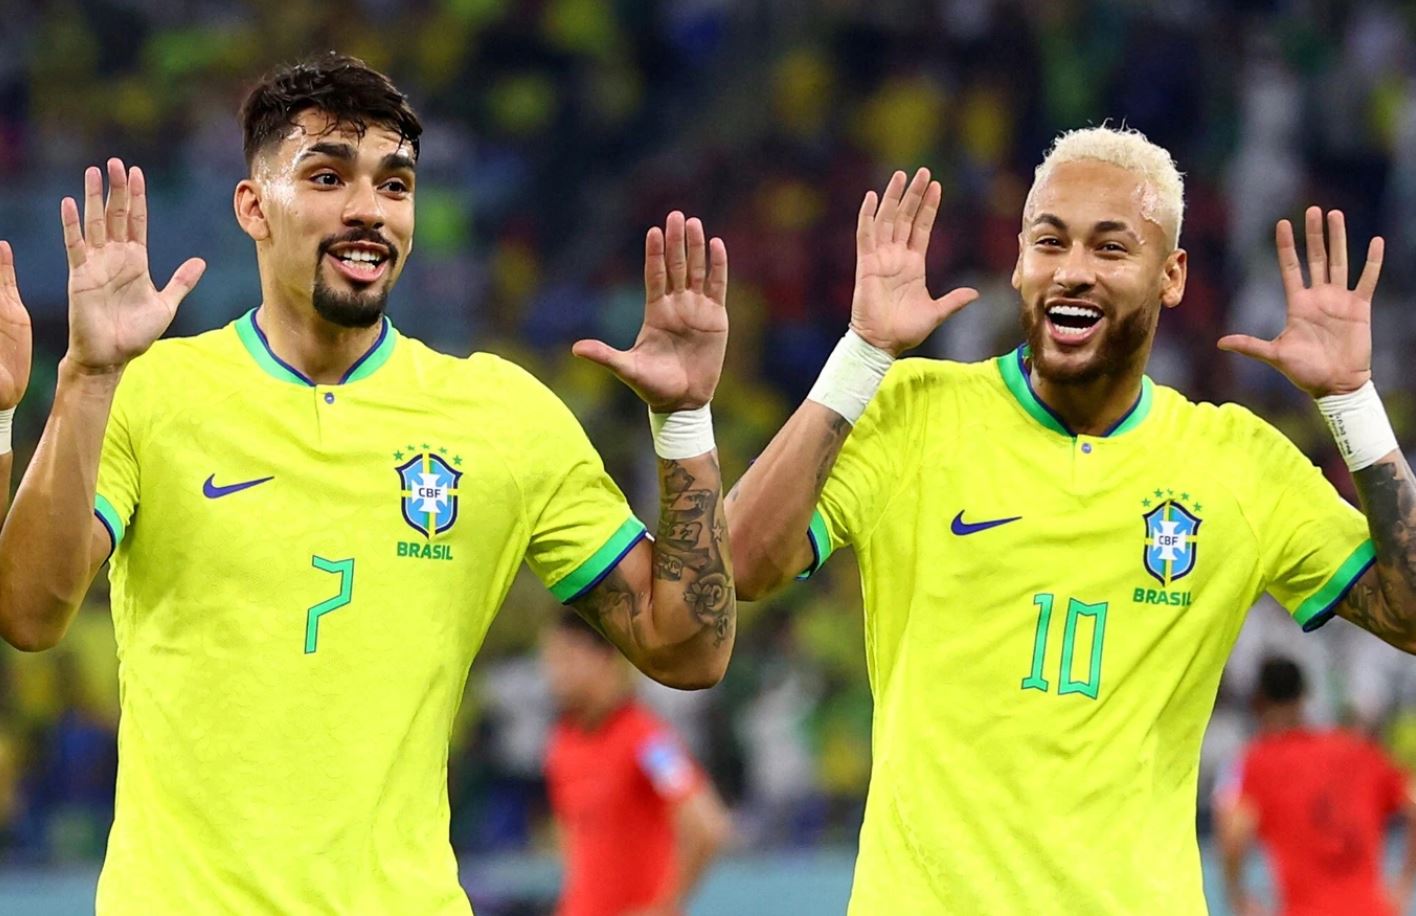 Бразилия разгромила Южную Корею, забив четыре гола — видео